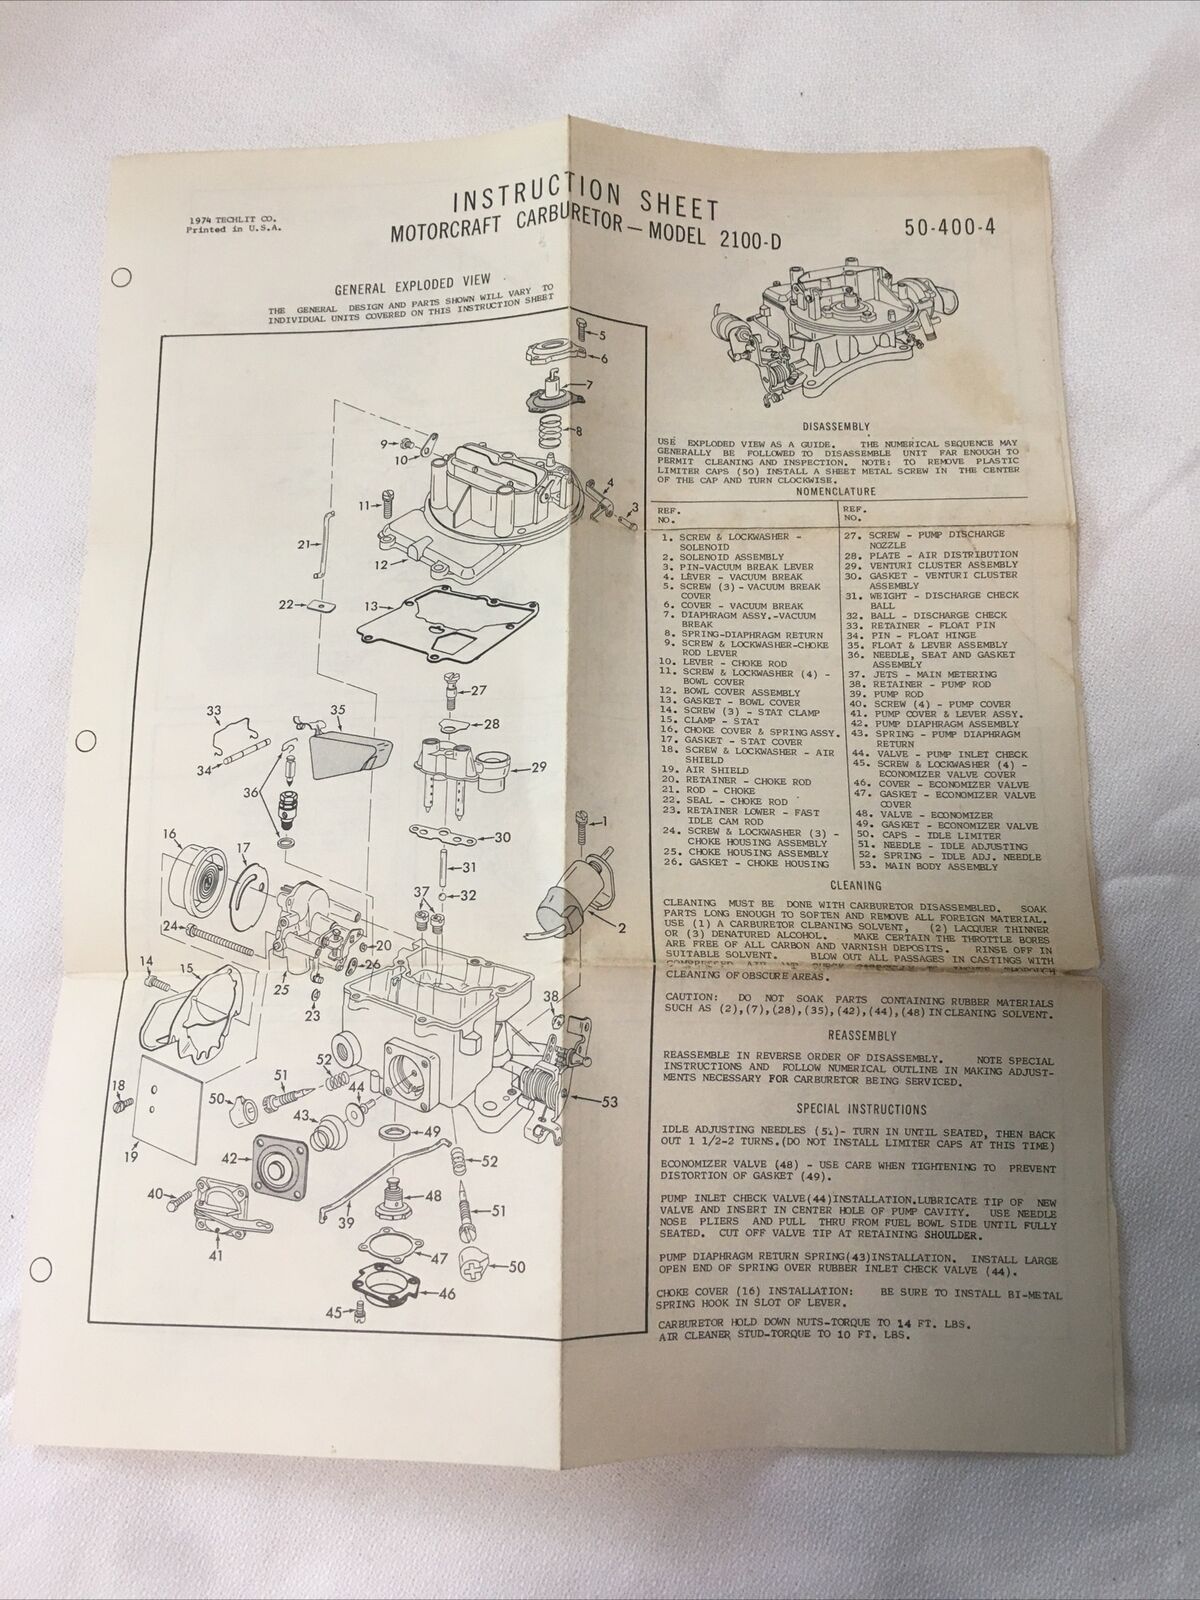 Instruction Sheet For Motorcraft Carburetor Model 2100-D